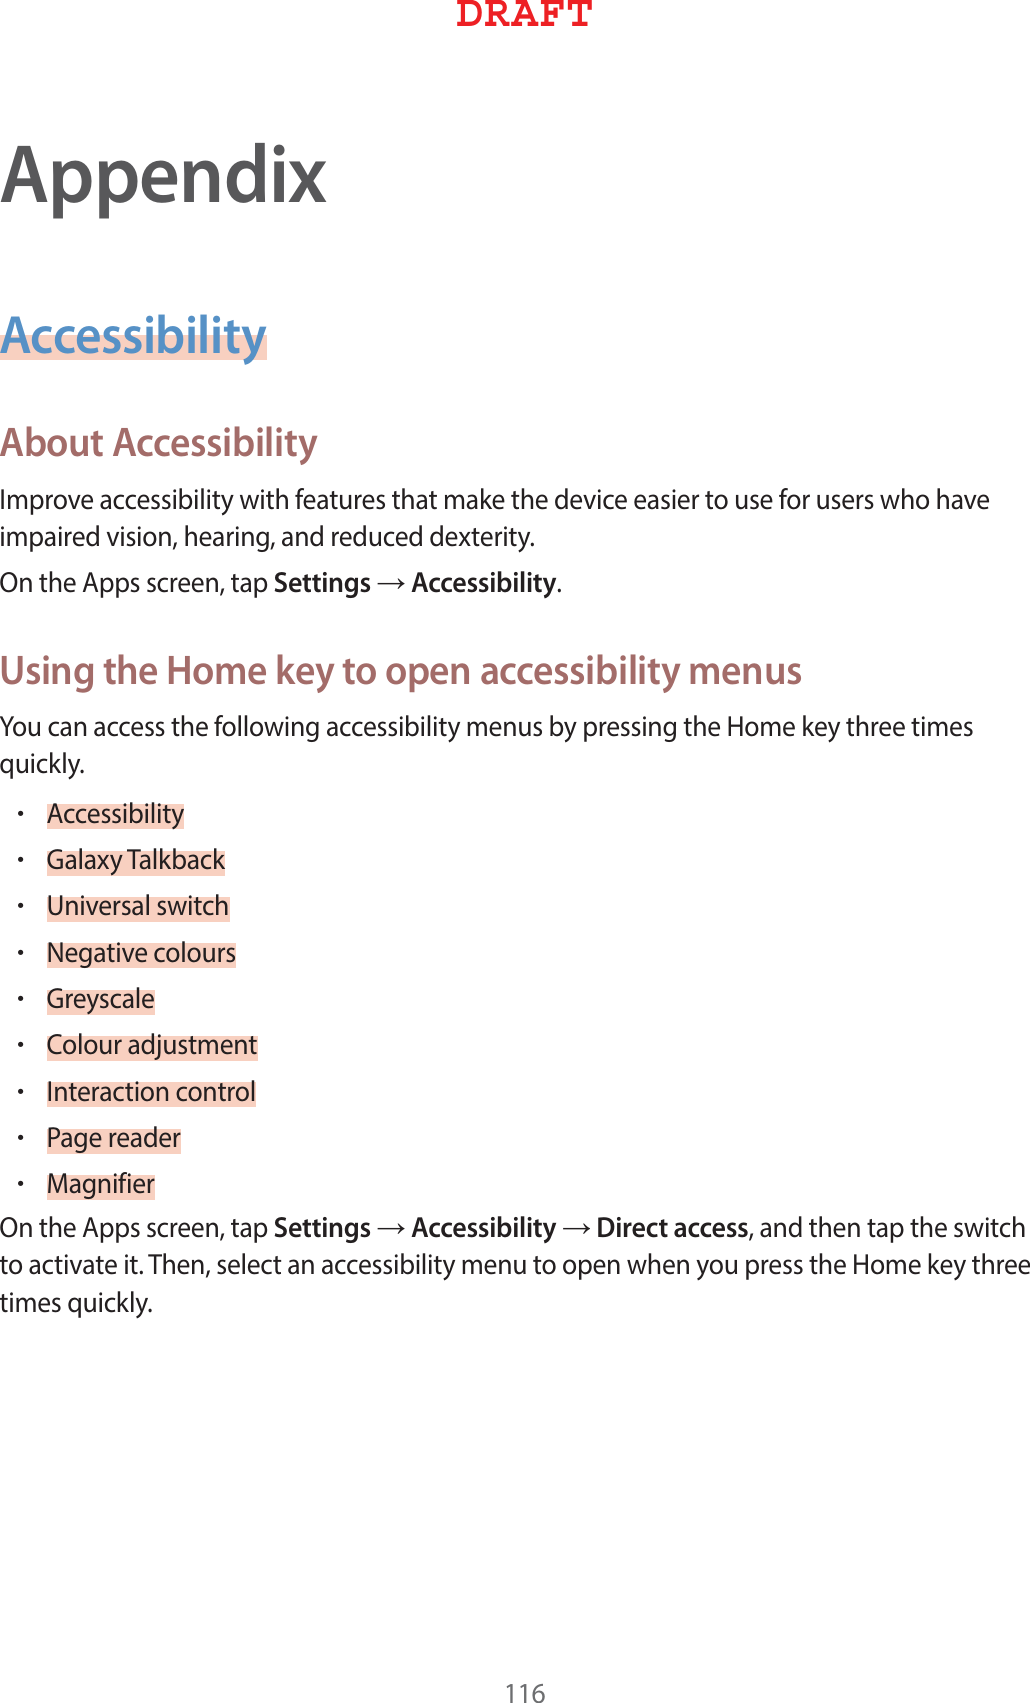 AppendixAccessibilityAbout Accessibility*NQSPWFBDDFTTJCJMJUZXJUIGFBUVSFTUIBUNBLFUIFEFWJDFFBTJFSUPVTFGPSVTFSTXIPIBWFJNQBJSFEWJTJPOIFBSJOHBOESFEVDFEEFYUFSJUZ0OUIF&quot;QQTTDSFFOUBQSettings→AccessibilityUsing the Home key to open accessibility menus:PVDBOBDDFTTUIFGPMMPXJOHBDDFTTJCJMJUZNFOVTCZQSFTTJOHUIF)PNFLFZUISFFUJNFTRVJDLMZr&quot;DDFTTJCJMJUZr(BMBYZ5BMLCBDLr6OJWFSTBMTXJUDIr/FHBUJWFDPMPVSTr(SFZTDBMFr$PMPVSBEKVTUNFOUr*OUFSBDUJPODPOUSPMr1BHFSFBEFSr.BHOJGJFS0OUIF&quot;QQTTDSFFOUBQSettings→Accessibility→Direct accessBOEUIFOUBQUIFTXJUDIUPBDUJWBUFJU5IFOTFMFDUBOBDDFTTJCJMJUZNFOVUPPQFOXIFOZPVQSFTTUIF)PNFLFZUISFFUJNFTRVJDLMZ%3&quot;&apos;5